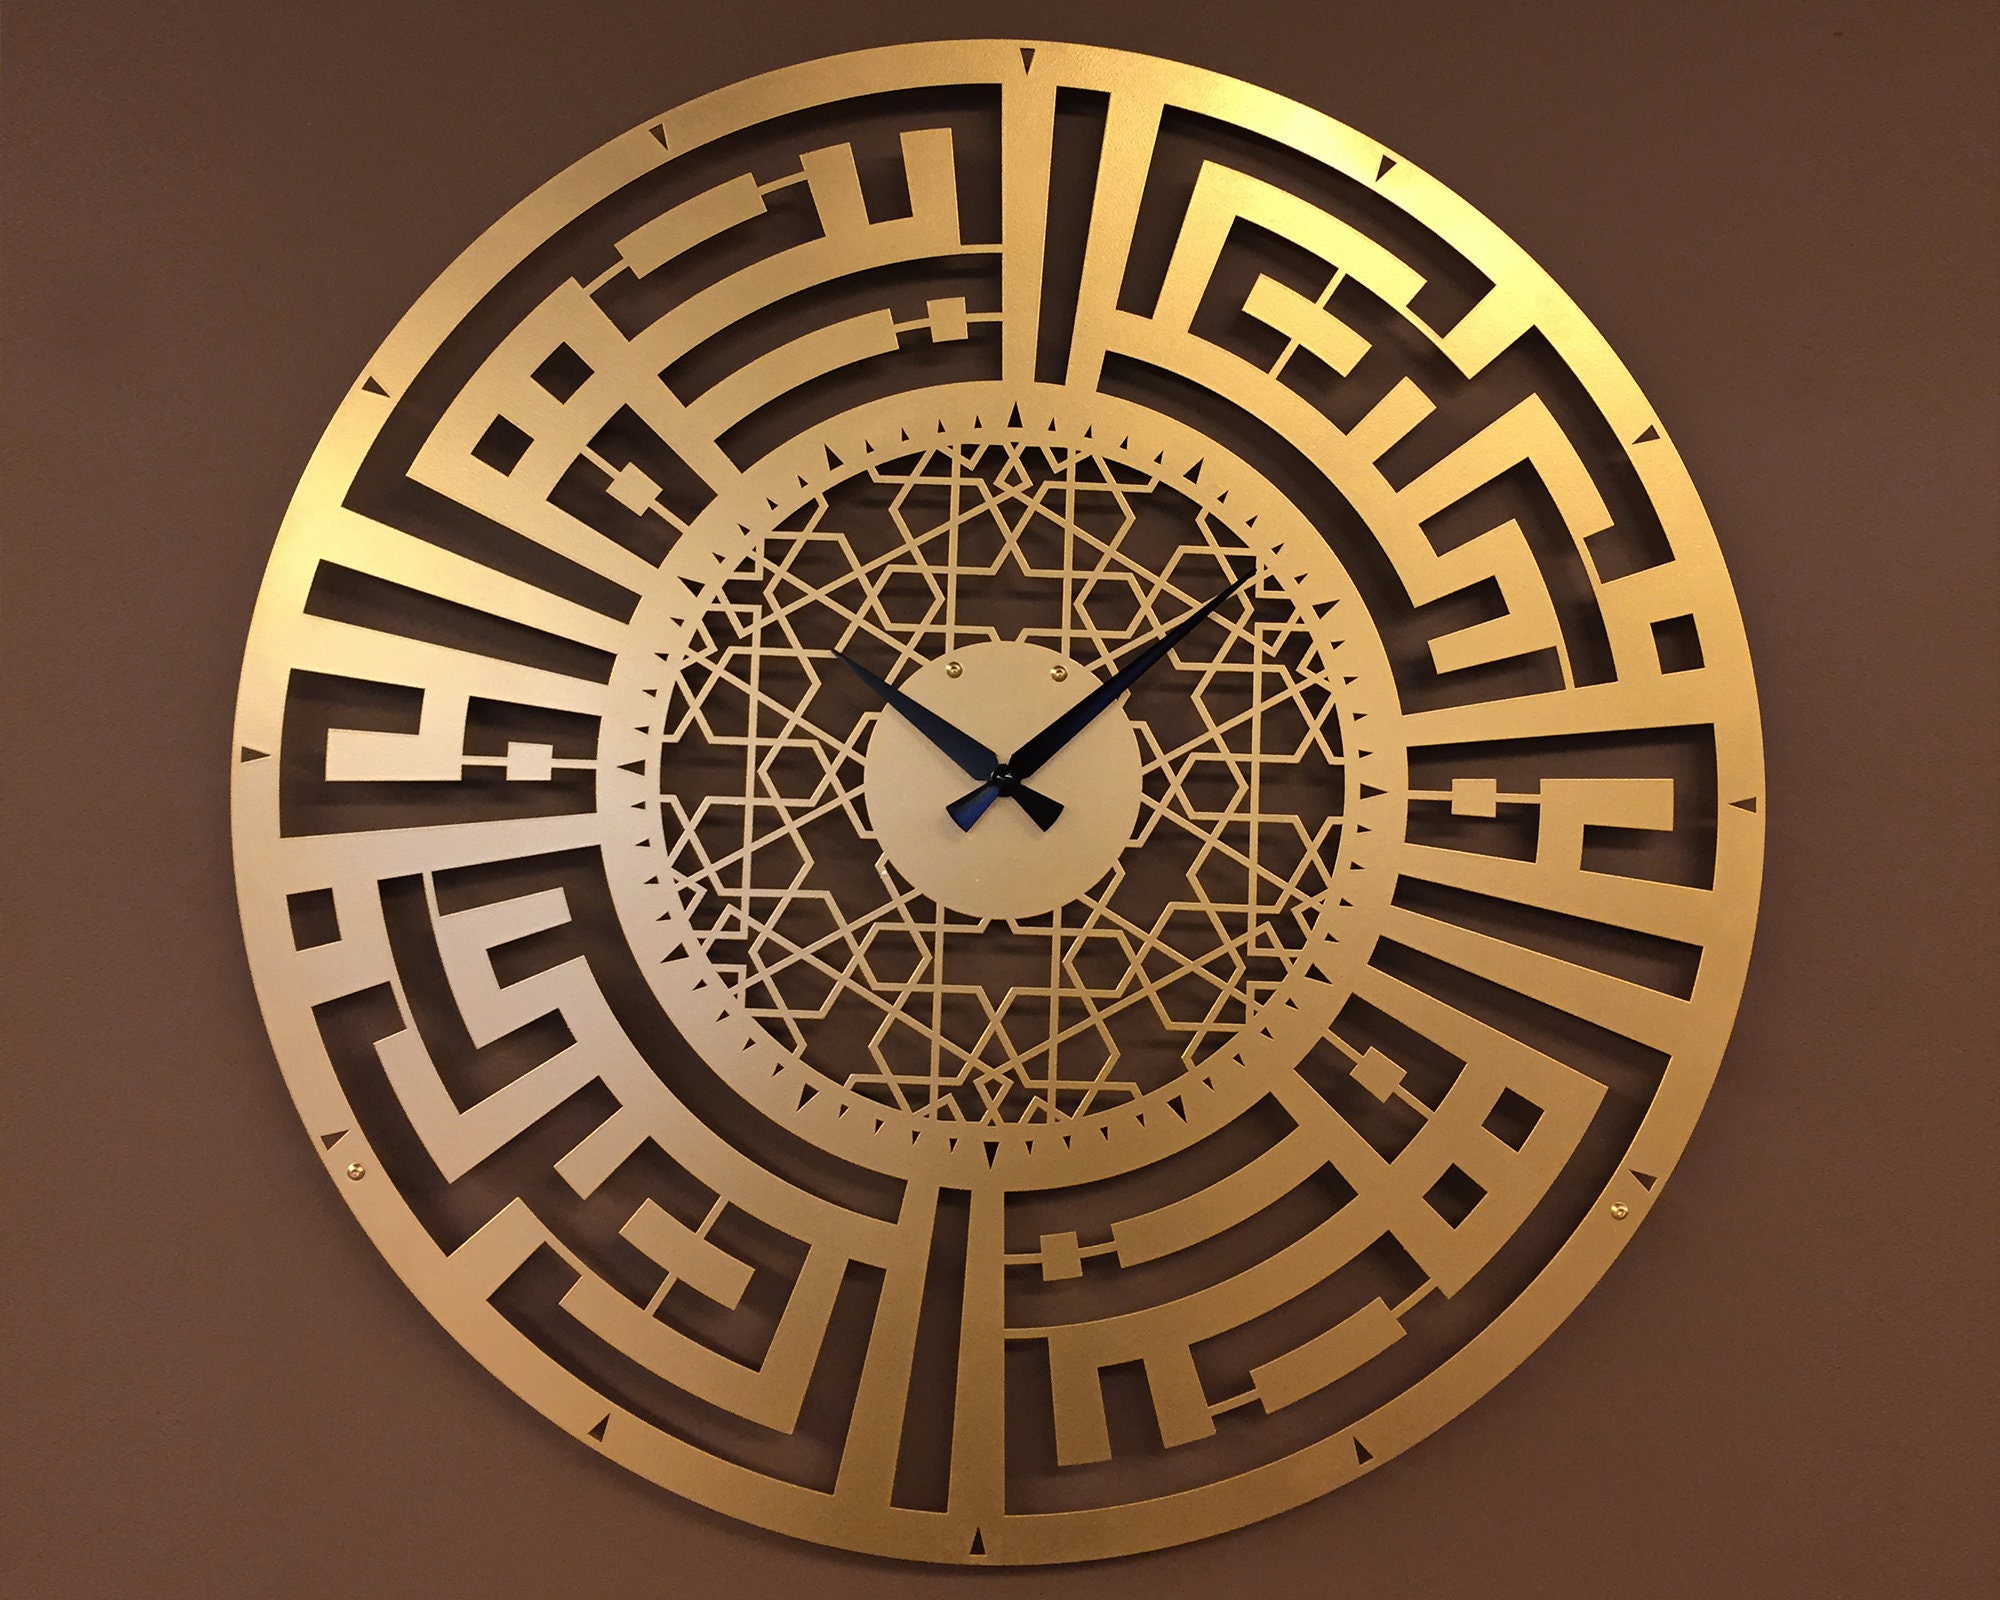 Циферблат арабских часов. Арабские часы настенные. Стенные часы исламские. Часы настенные в мусульманском стиле. Арабский циферблат часов.